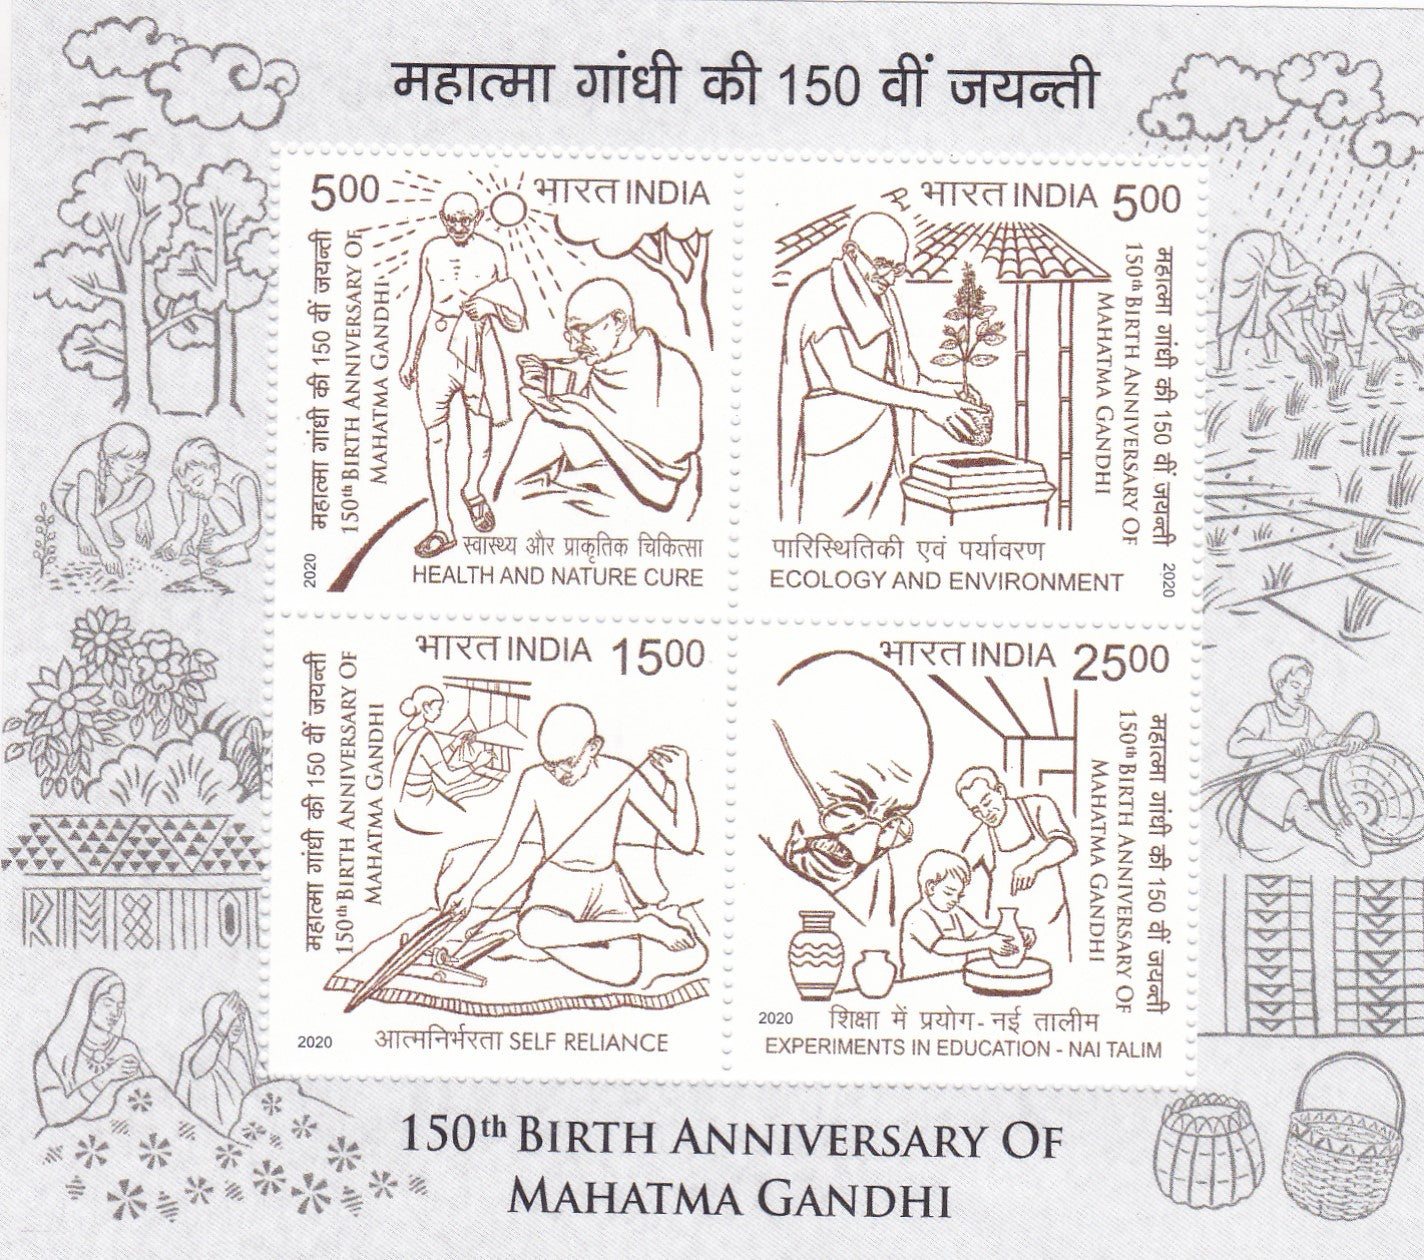 भारत-महात्मा गांधी एमएस की 150वीं वर्षगांठ